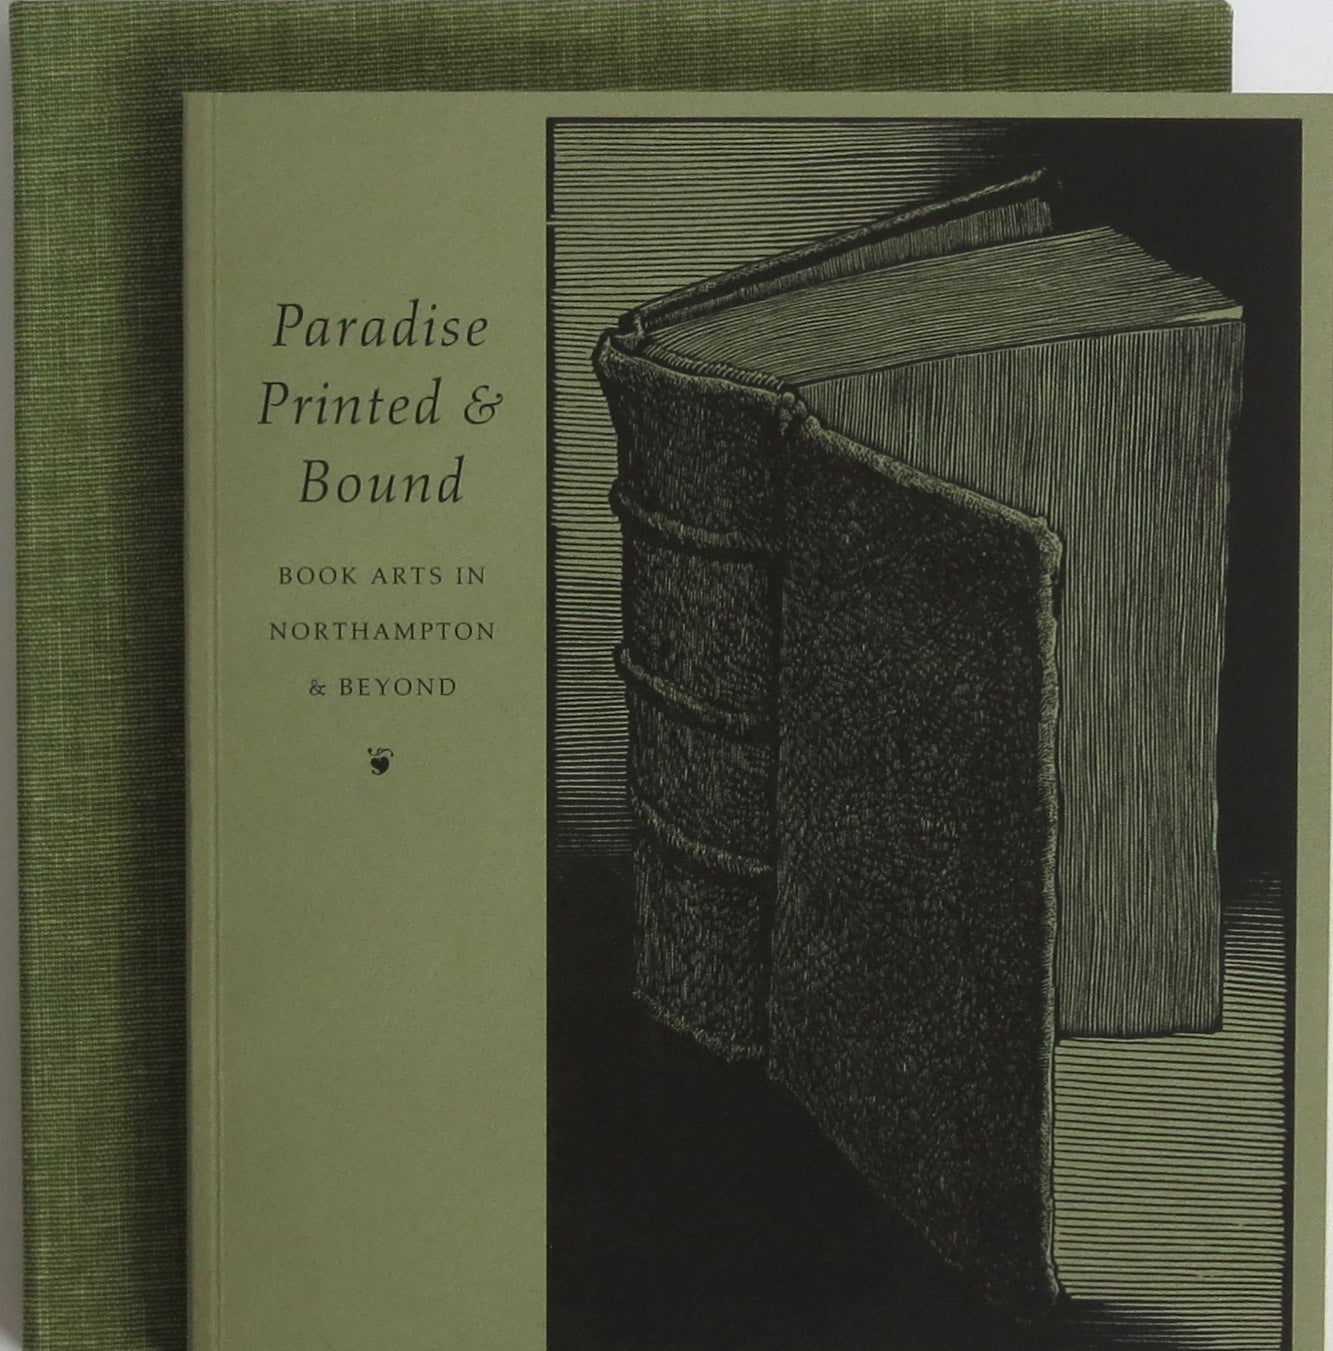 Paradise Printed & Bound. Barbara Blumenthal, ed